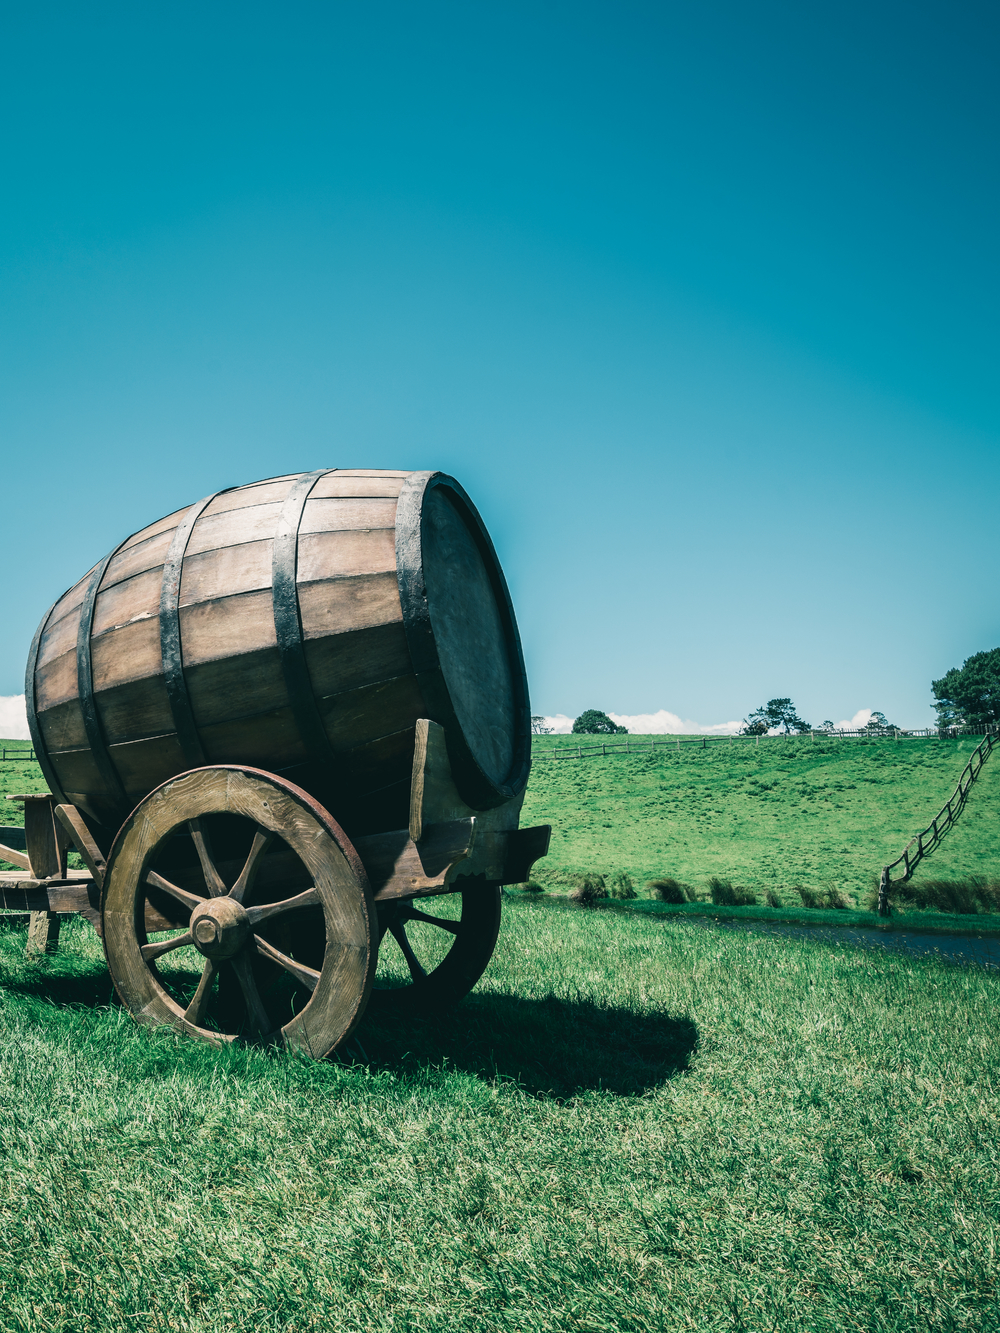 葡萄酒桶的葡萄酒样式图象在推车的反对绿草领域在乡下农业风景背景中有机食品酿酒厂和酒精饮料产品行业